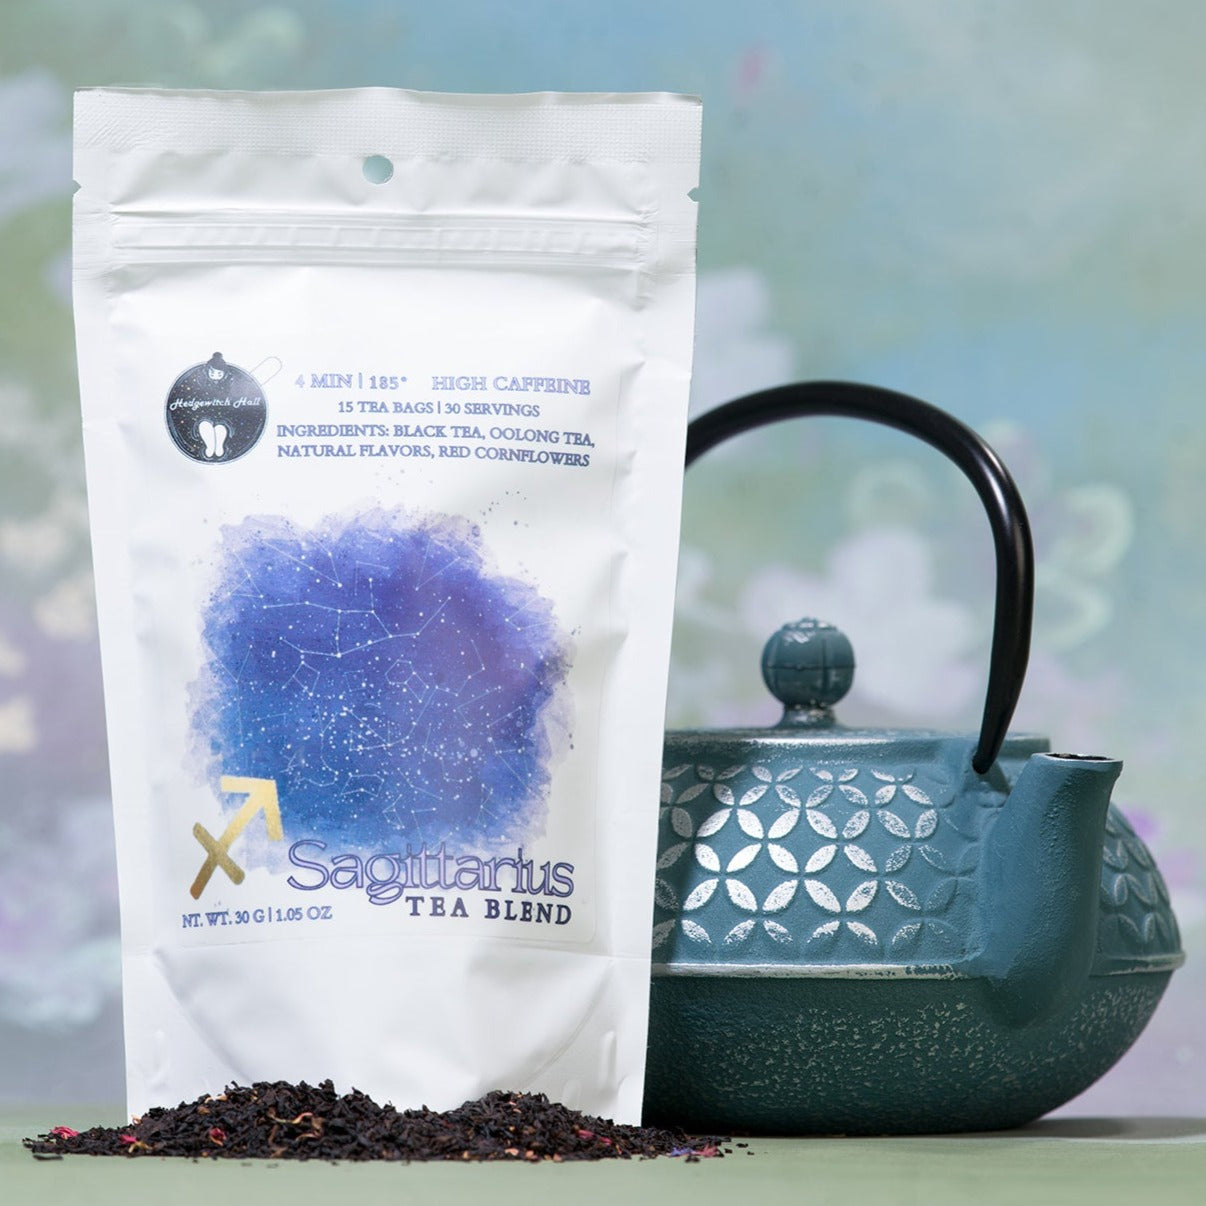 Product photo of Sagittarius tea blend and teal teapot.